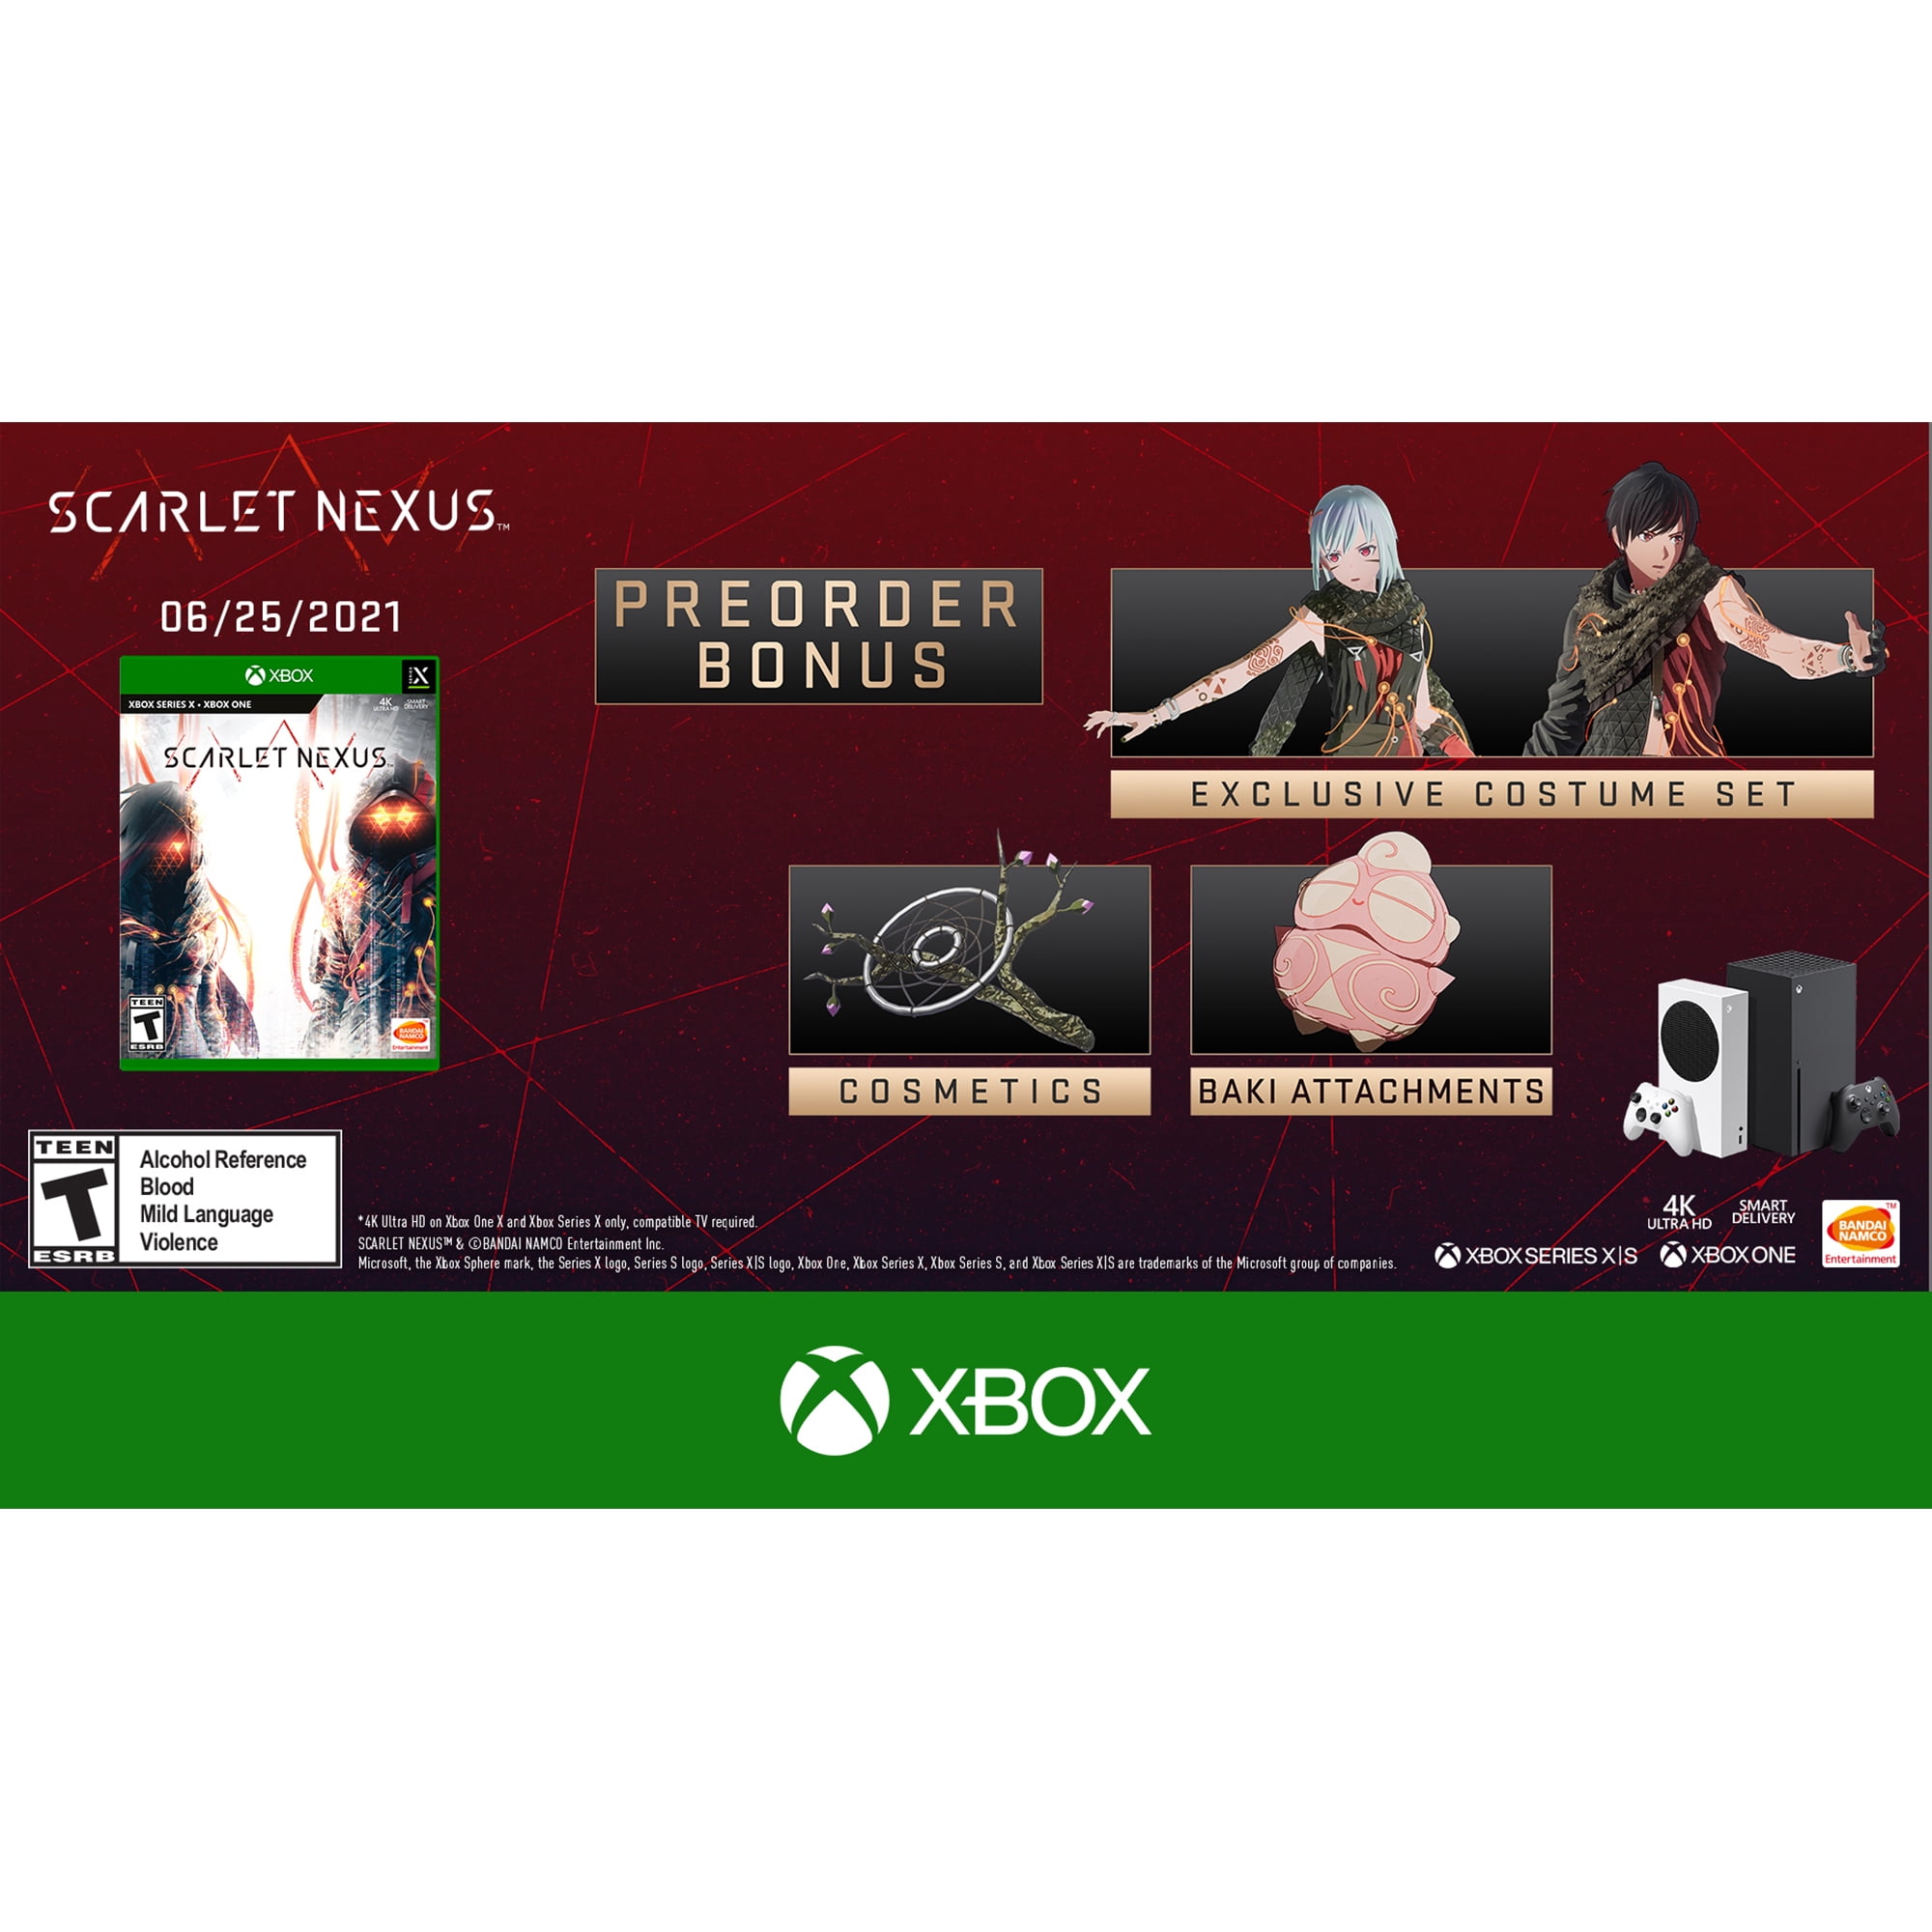 Buy SCARLET NEXUS Bond Enhancement Pack 2 - Microsoft Store en-MS